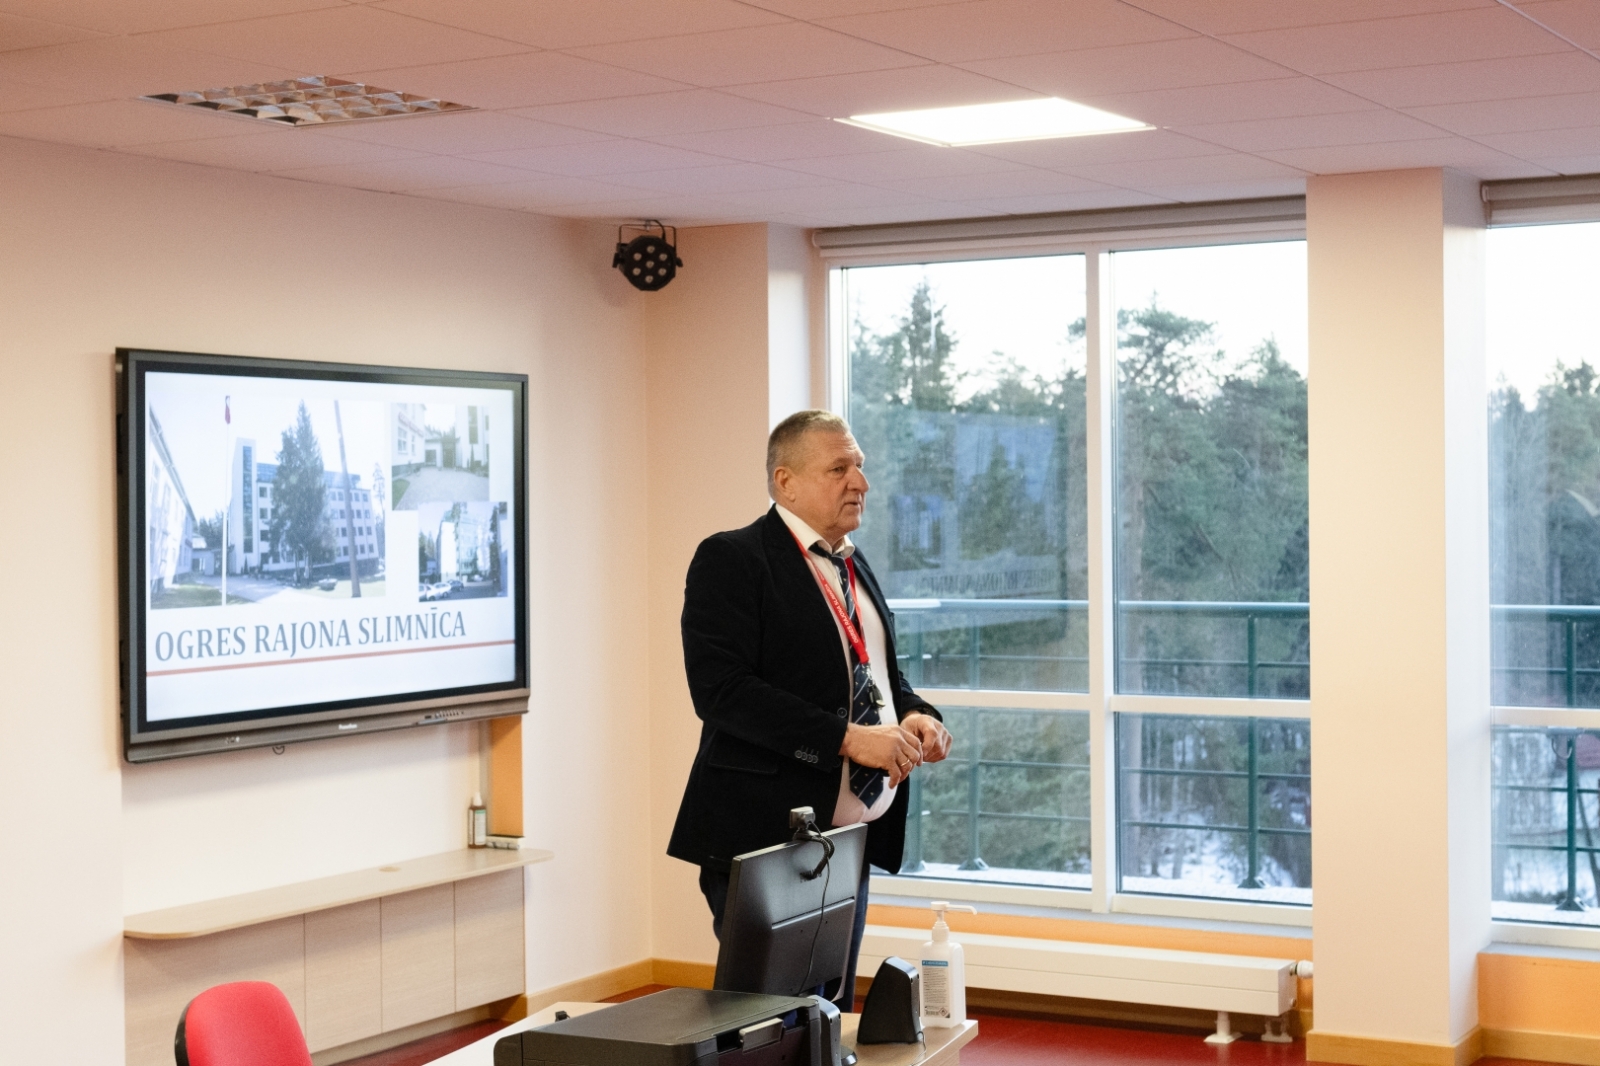 Slimnīcas vadītājs Dainis Širovs sniedz prezentāciju par slimnīcu